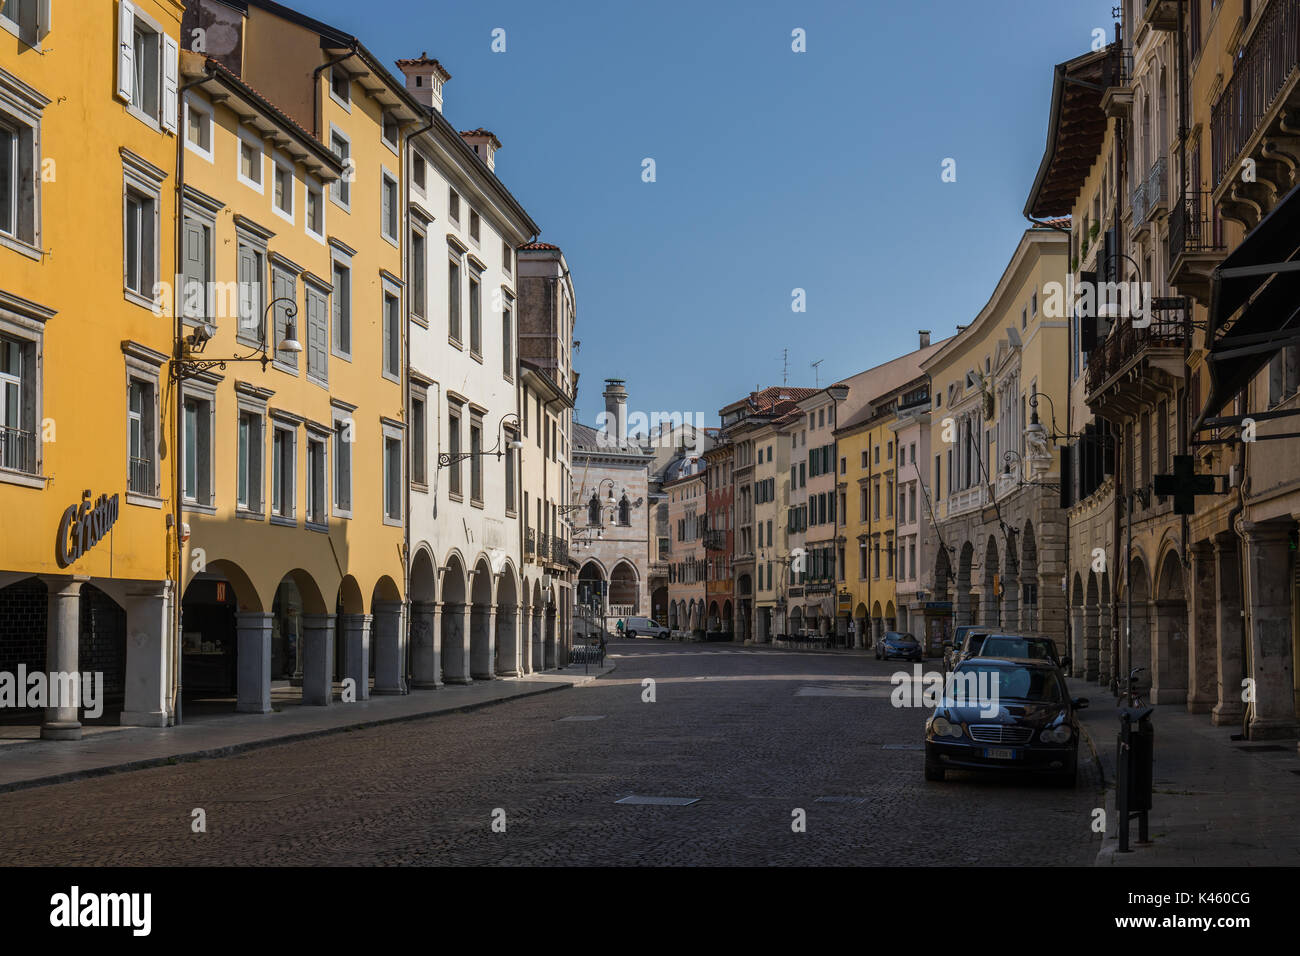 Colorful buildings in the historical center of Udine (Via Mercatovecchio), Friuli Venezia Giulia, Italy Stock Photo